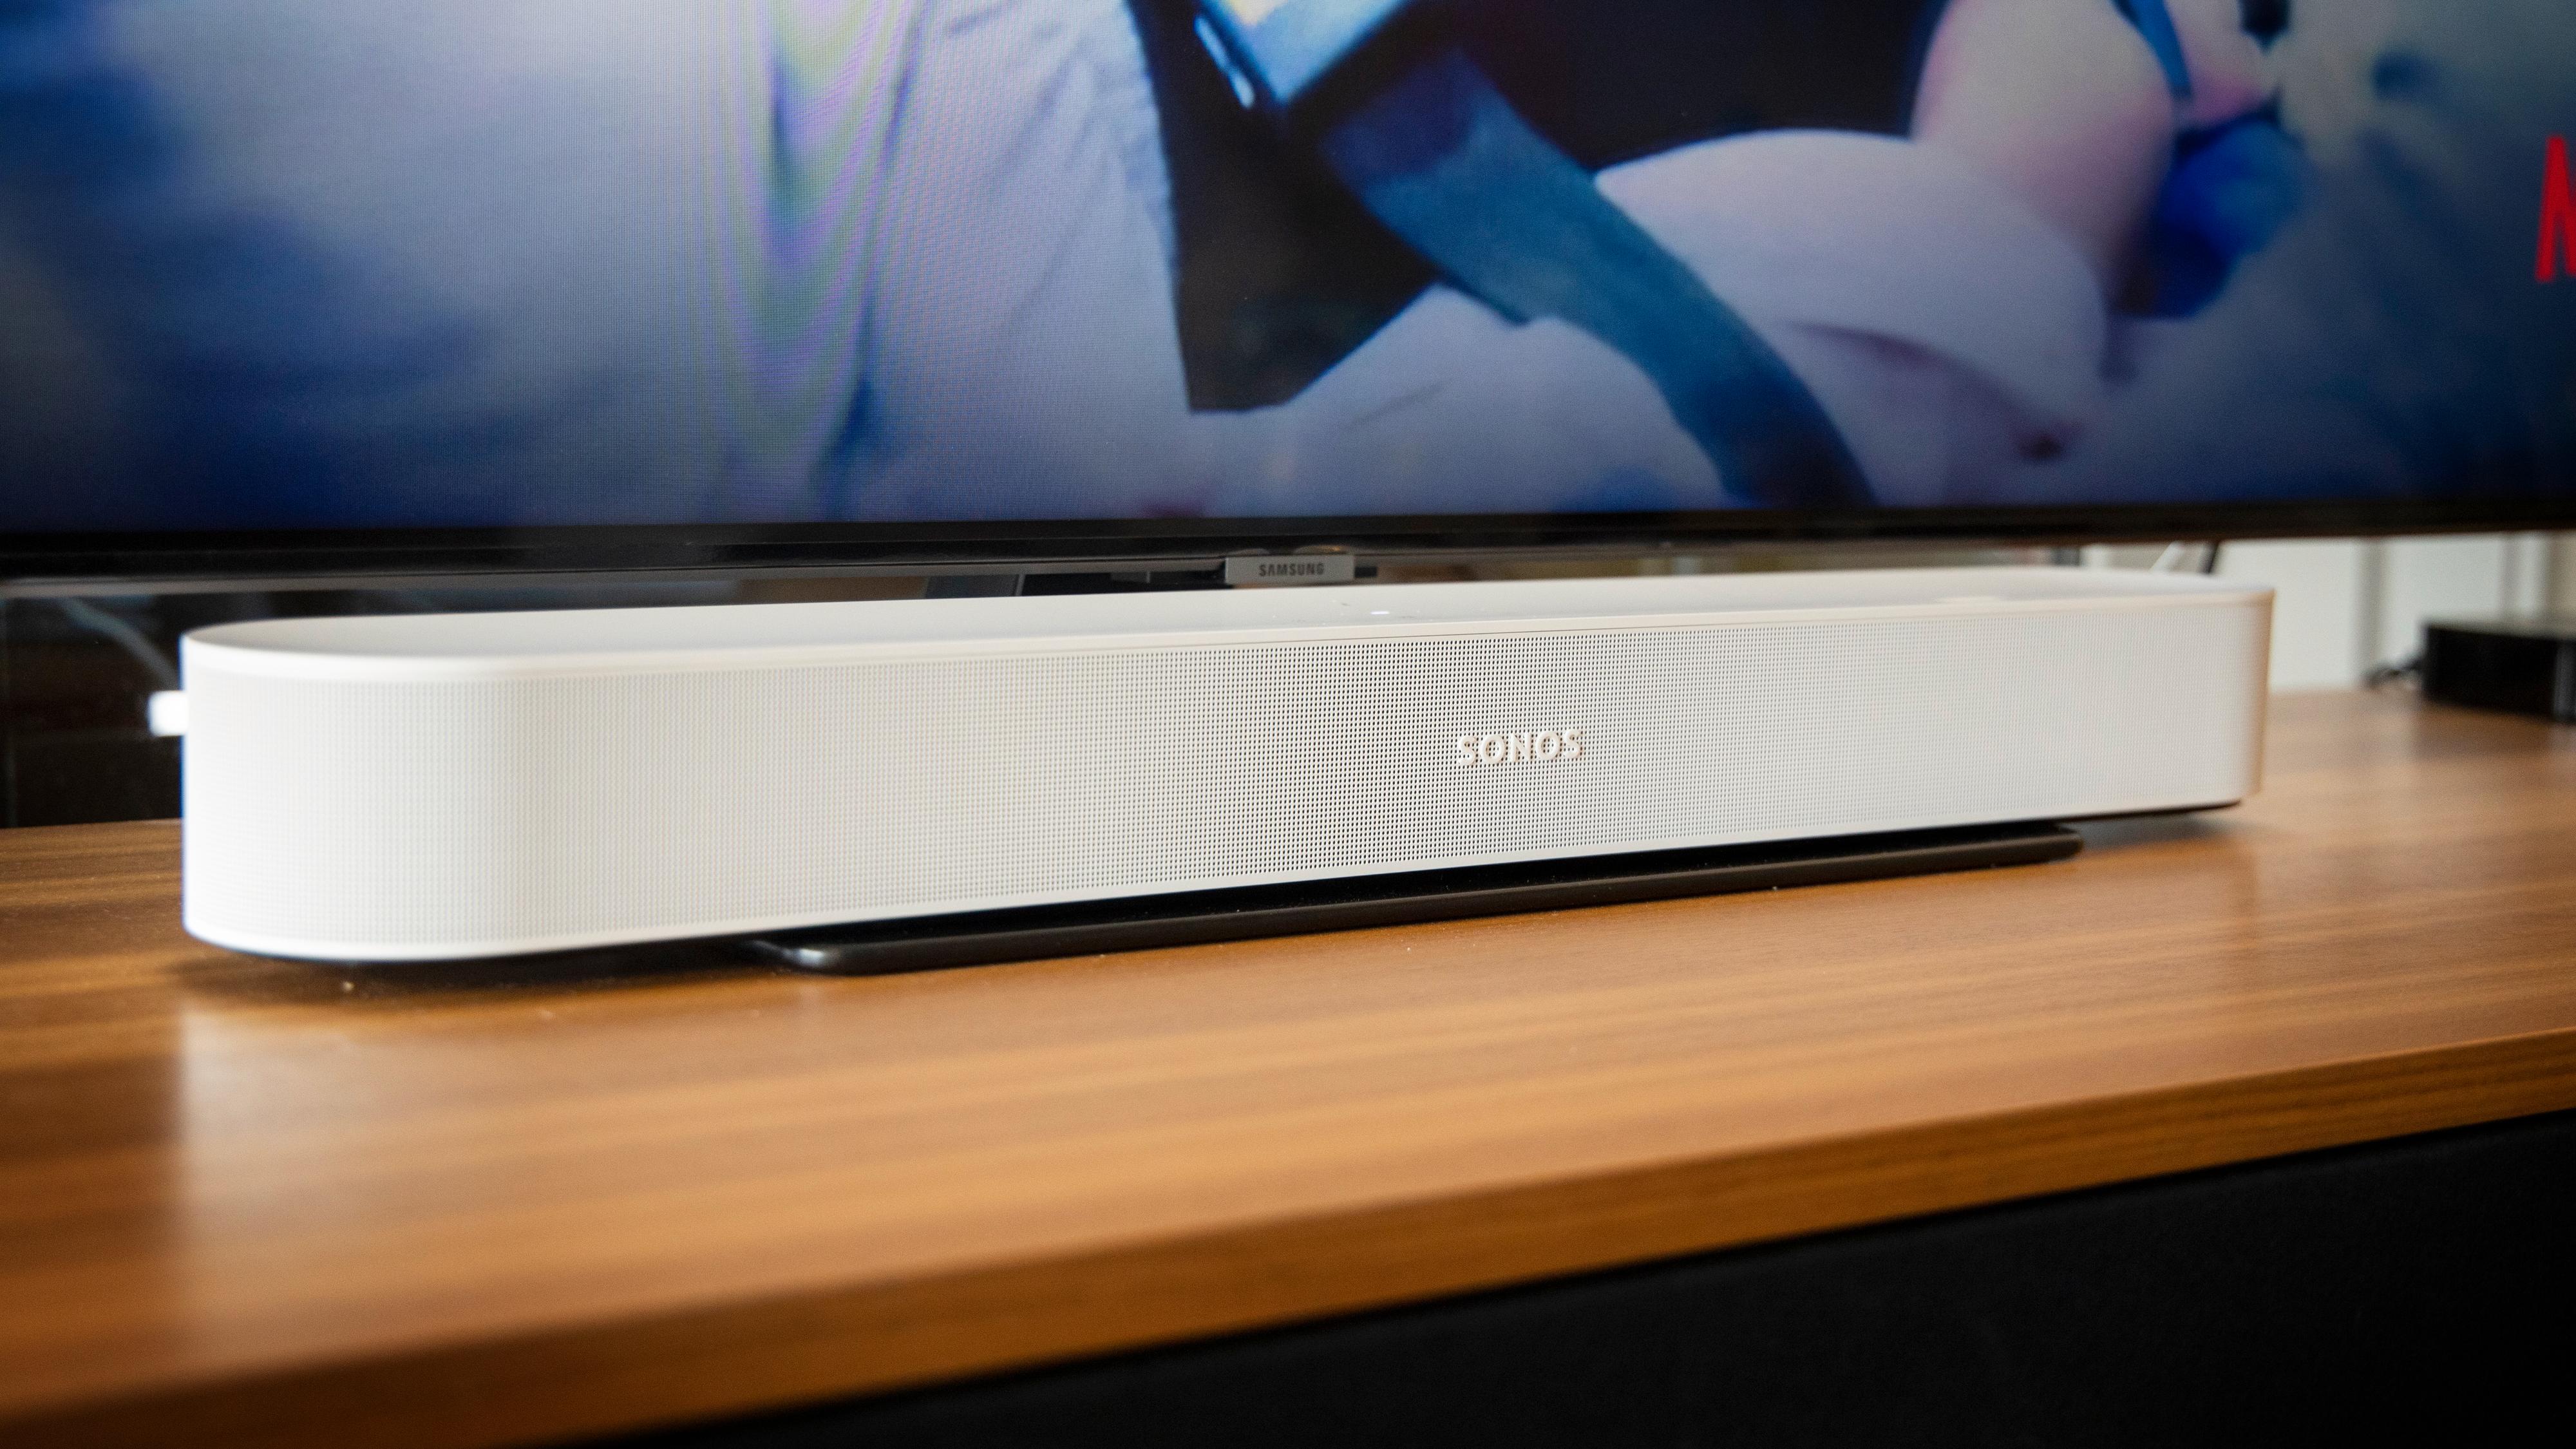 Sonos setter opp prisene - igjen